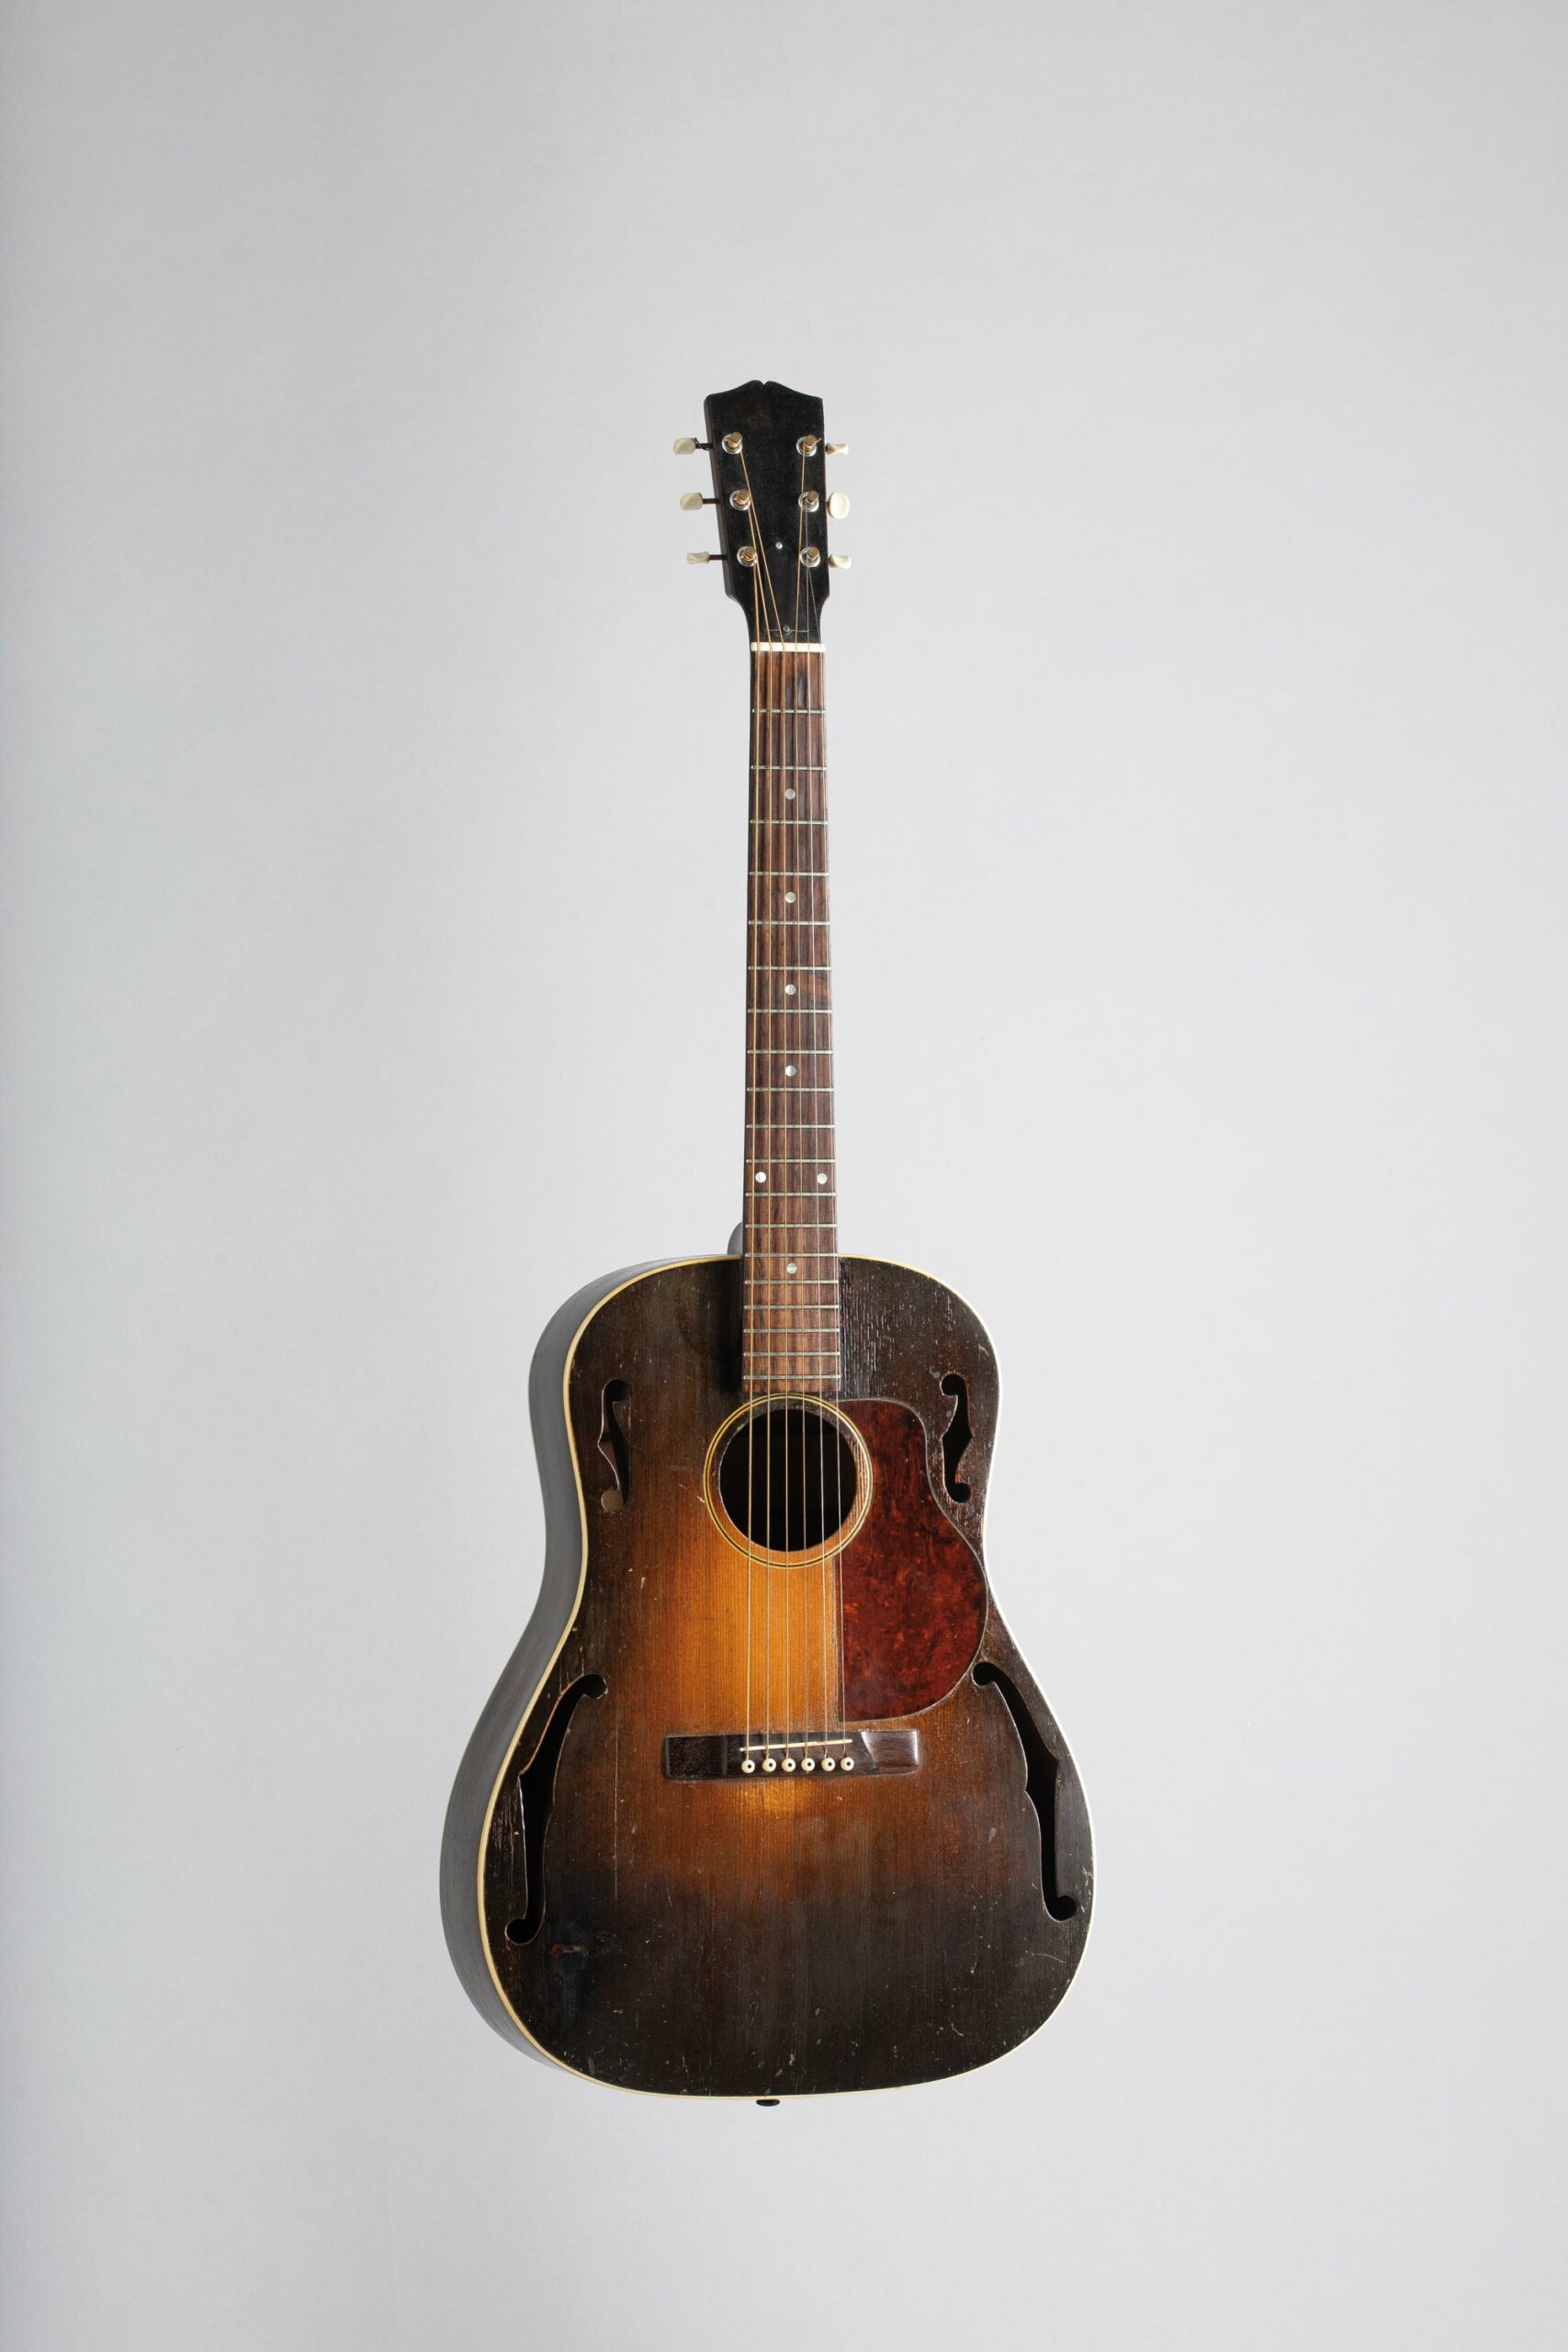 Rare guitare acoustique de GIBSON modèle HG20 Collection Palm Guitars Instrument mis en vente par Vichy Enchères le 5 novembre 2022 © C. Darbelet